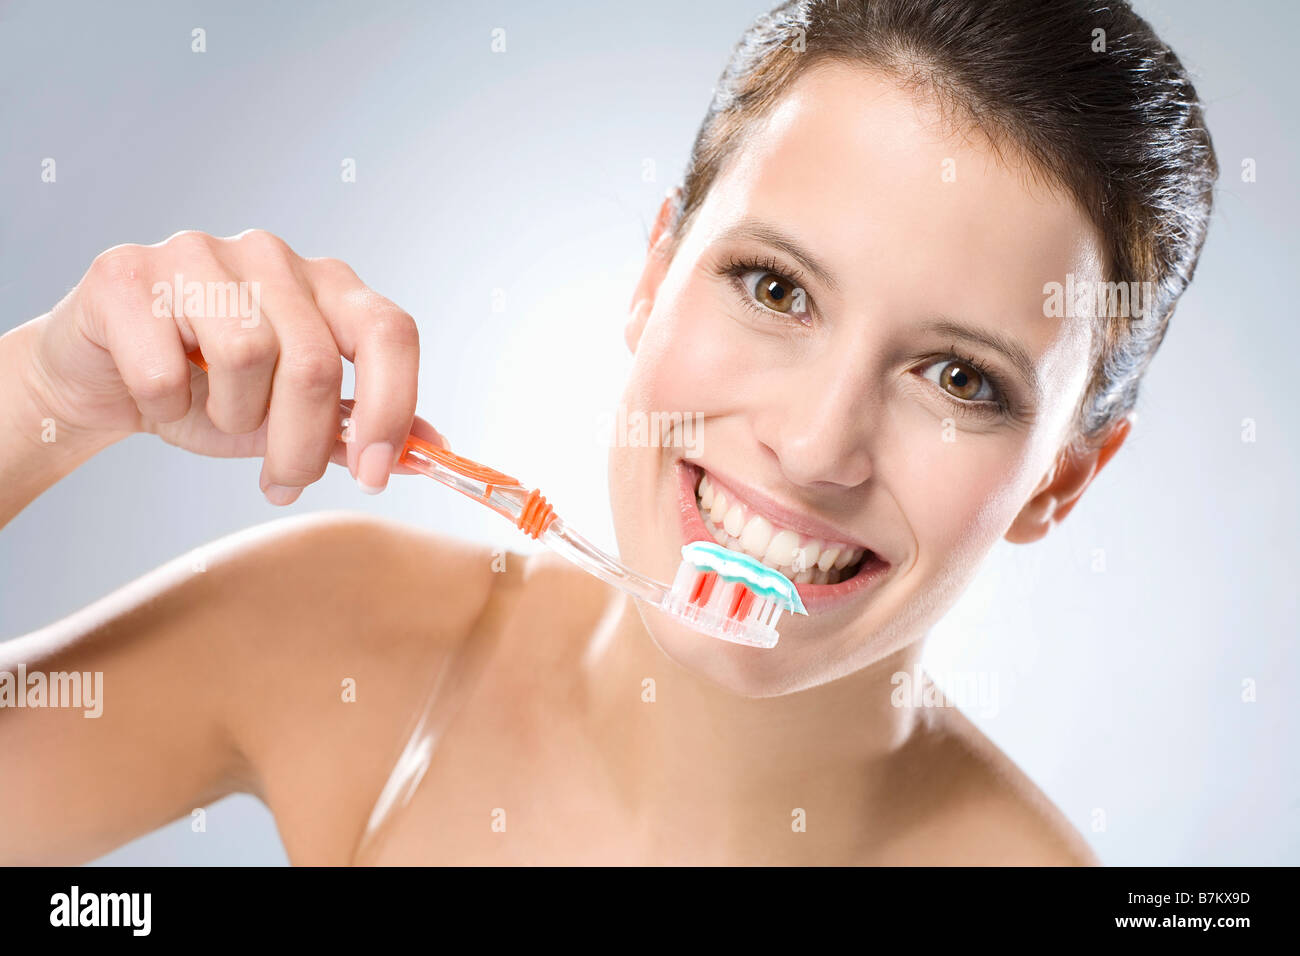 Болеть зуб отбеливание. Человек чистит зубы. Здоровая улыбка. Отбеливание зубов это больно.